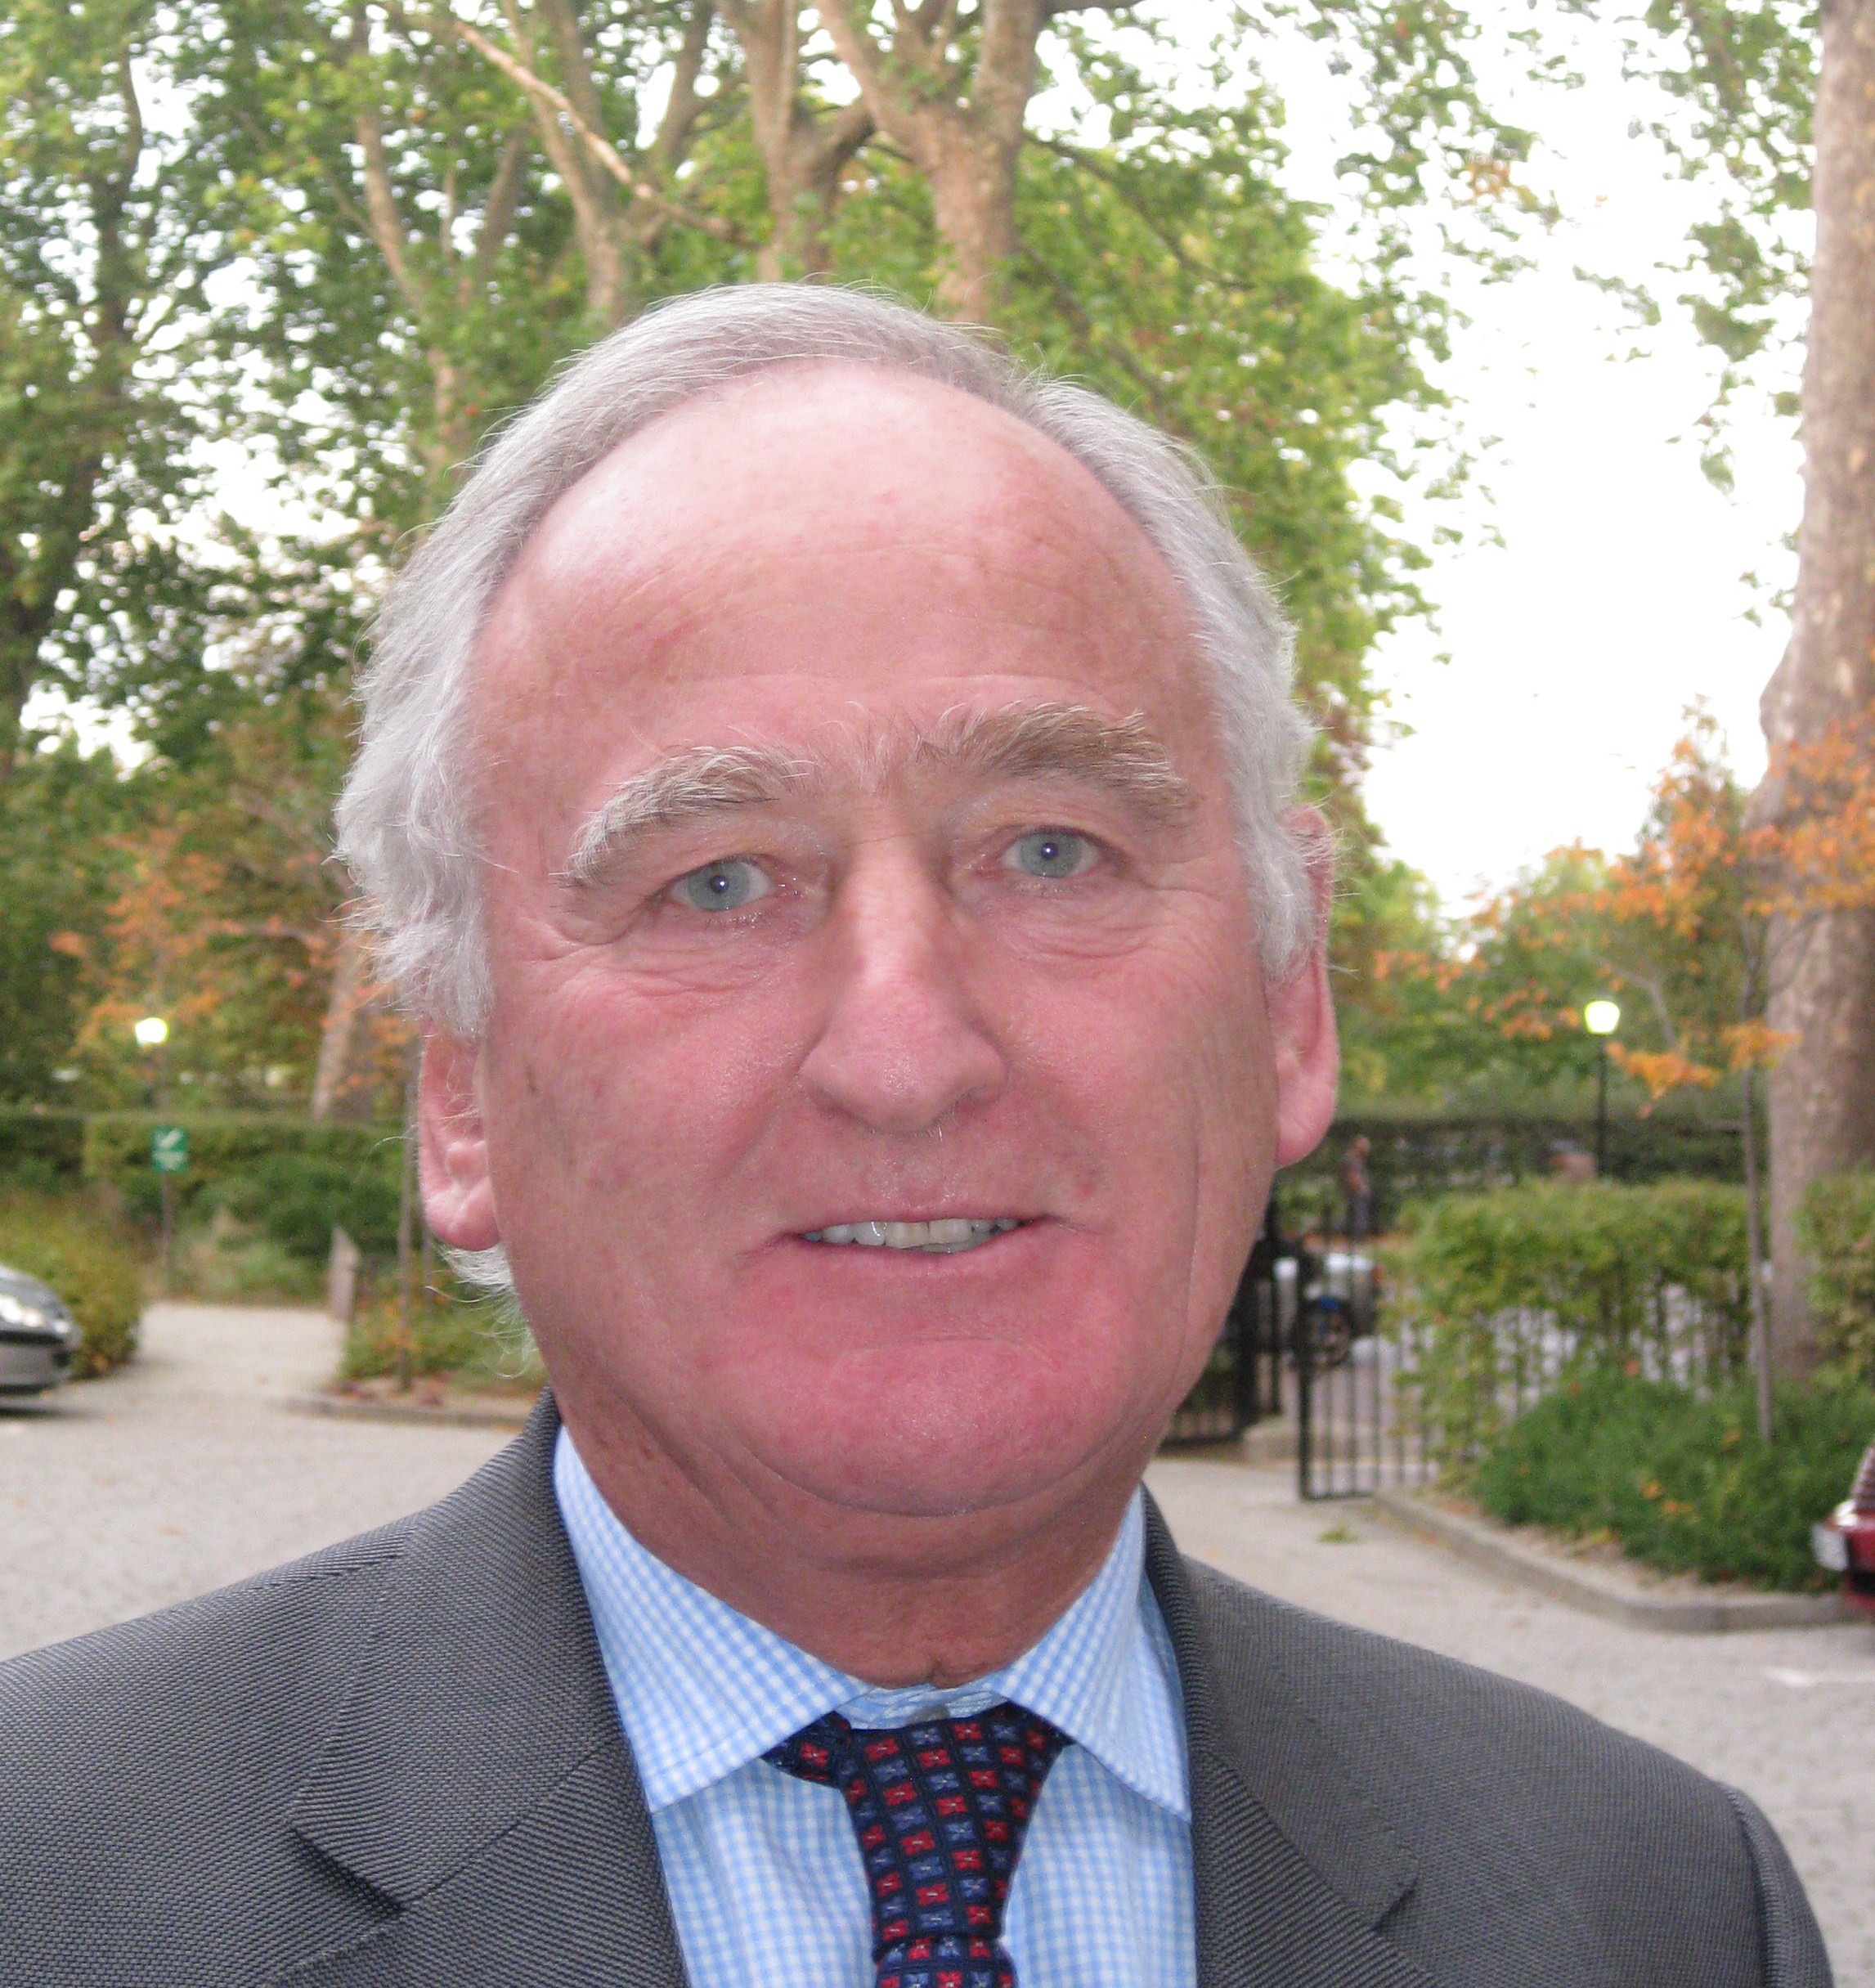 Prof David Salisbury